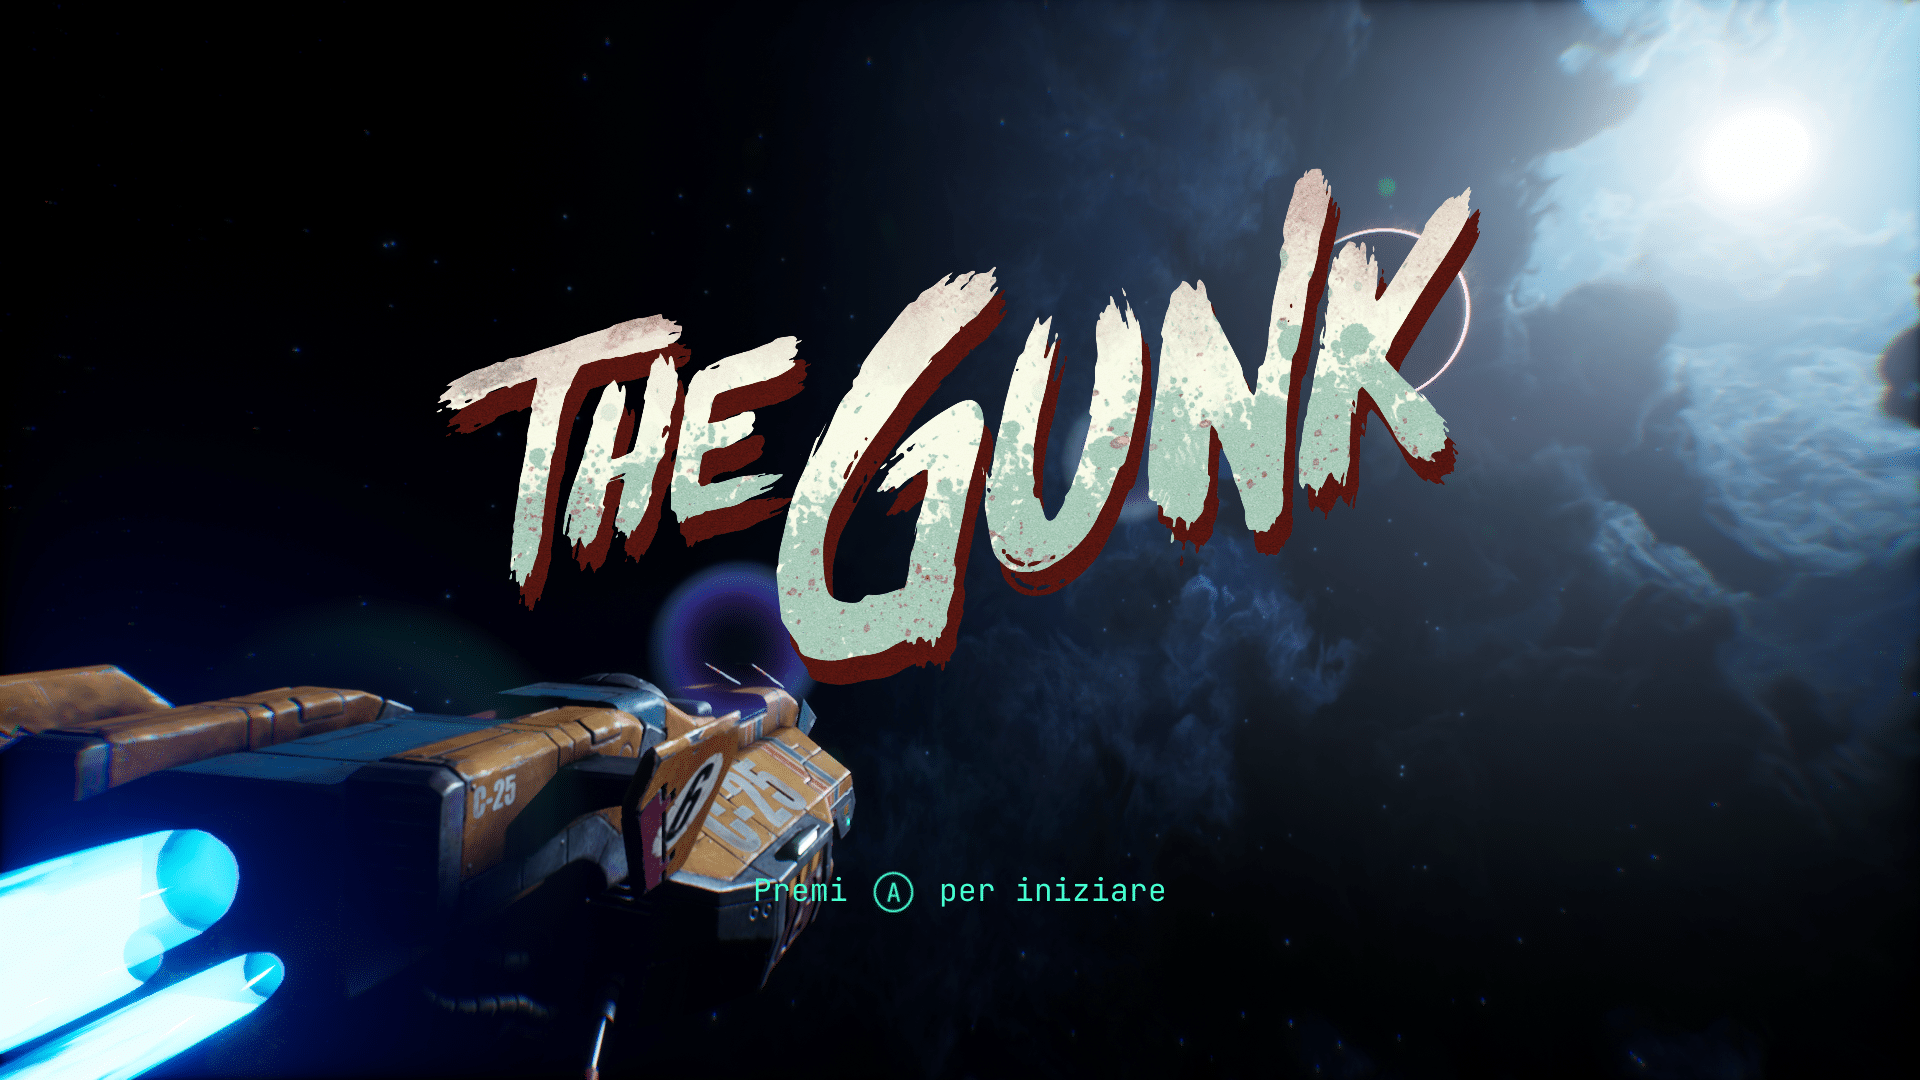 Recensione di The Gunk: che bello ripulire un pianeta alieno dalla melma! thumbnail